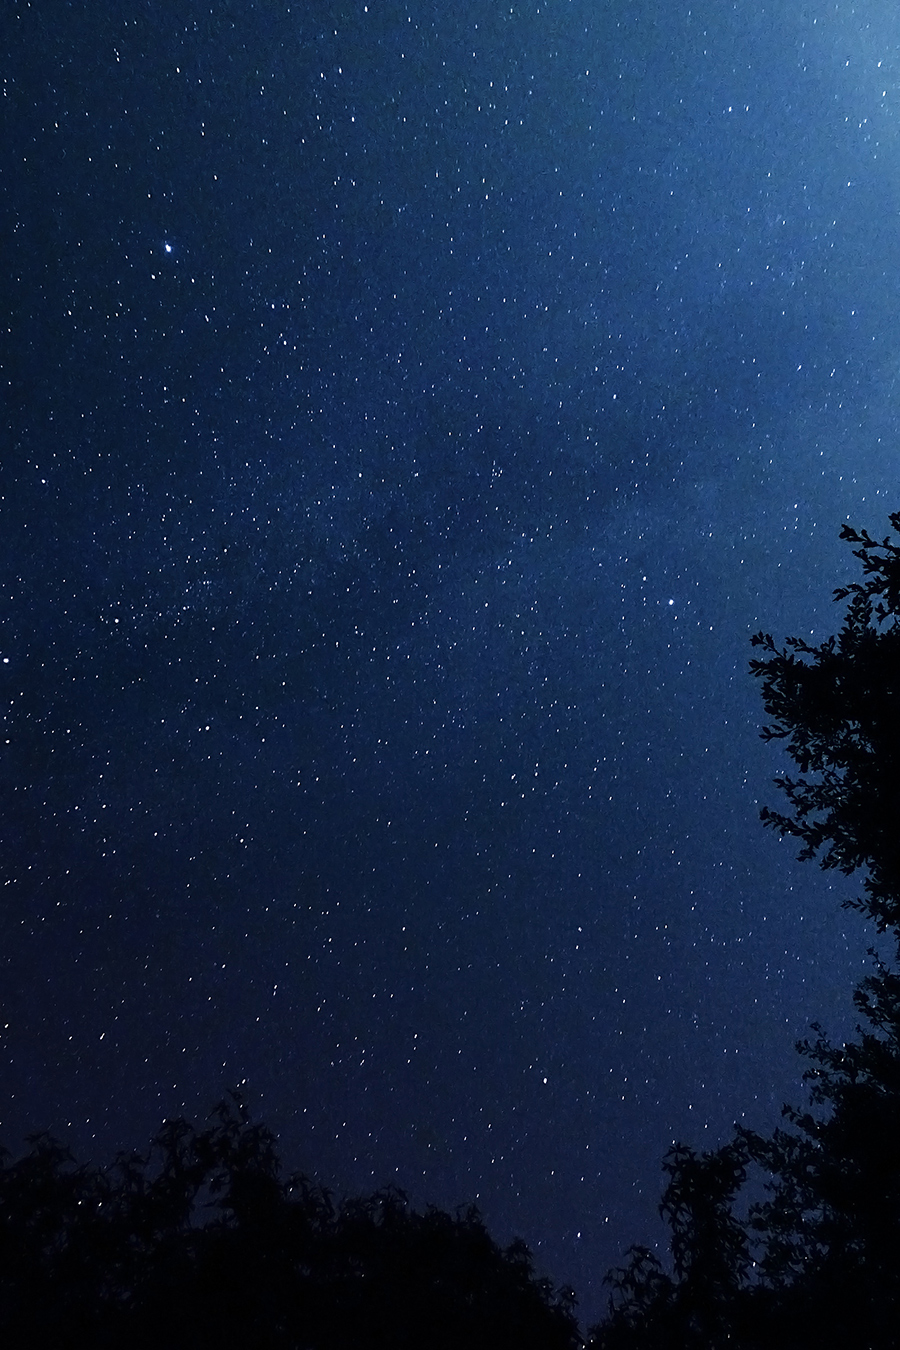 ciel nocturne nuit étoile ciel voie lactée photo de nuit photographie